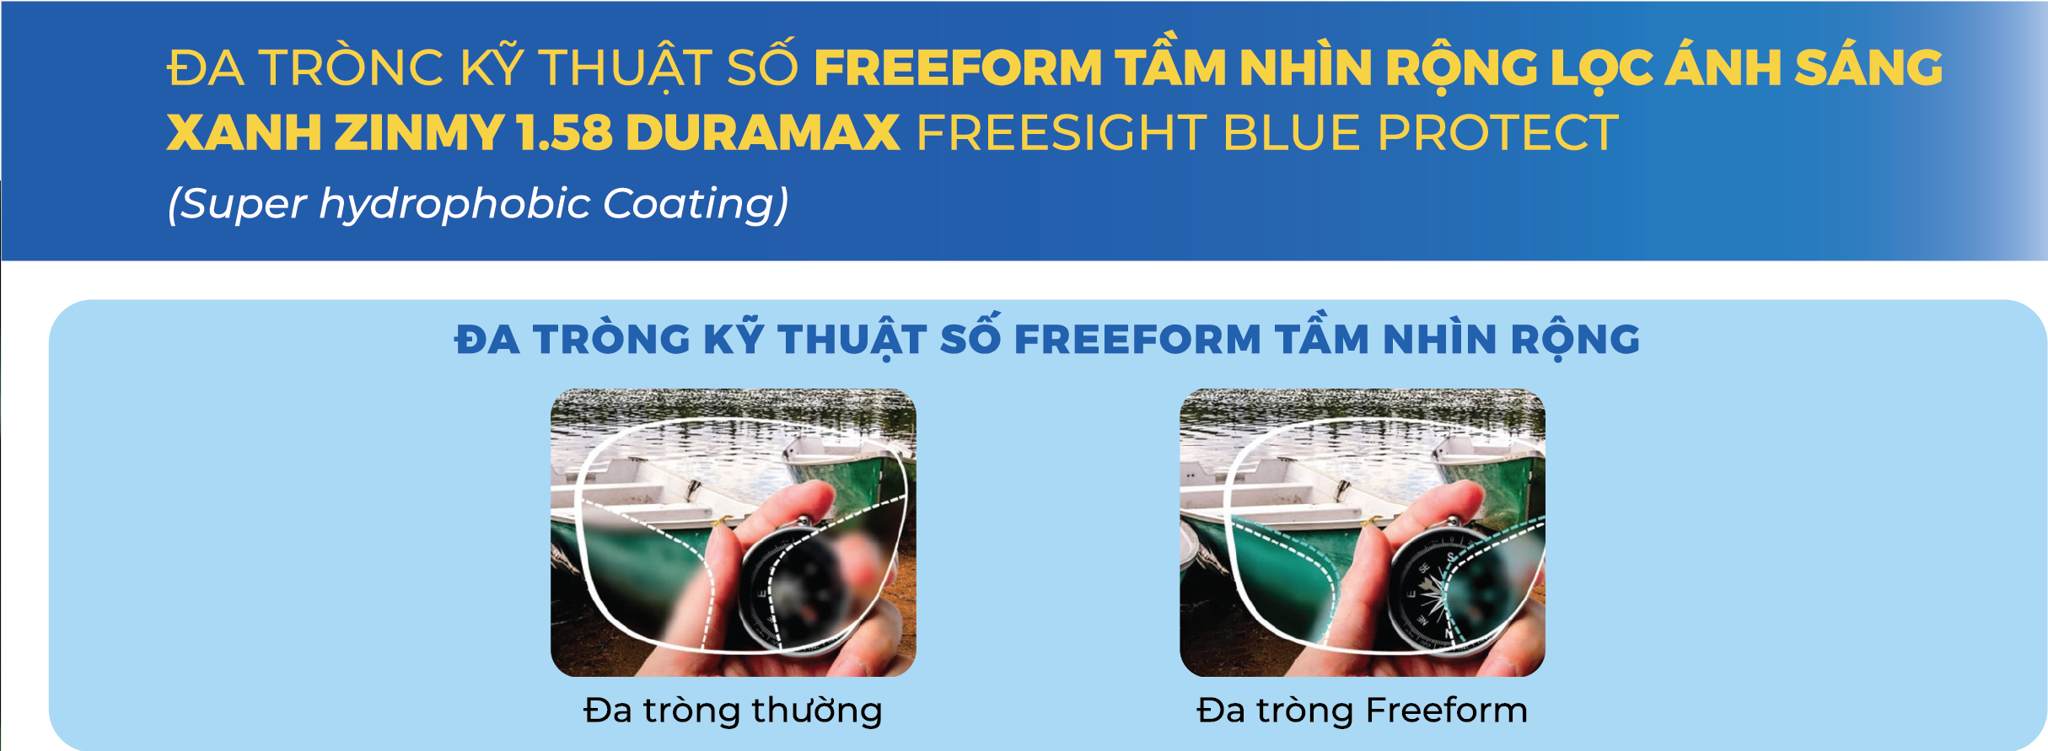 Đa Tròng Kỹ Thuật Số Freeform Chống Ánh Sáng Xanh Zinmy Duramax Freesight Blue Protect 1.58